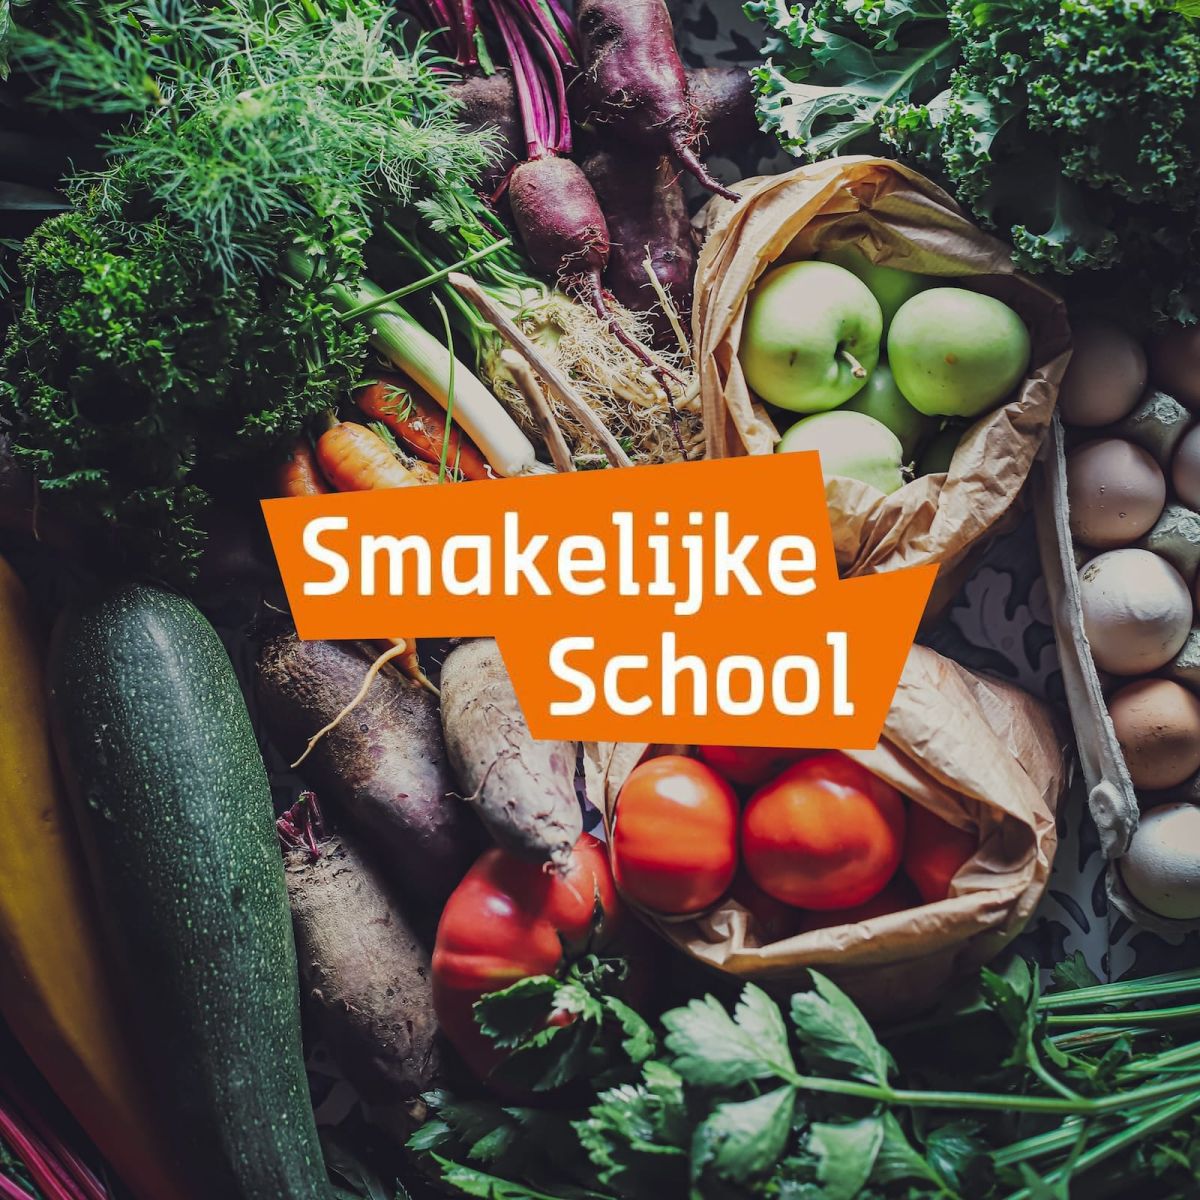 Het logo van Smakelijke school met als achtergrond een heleboel verse groenten